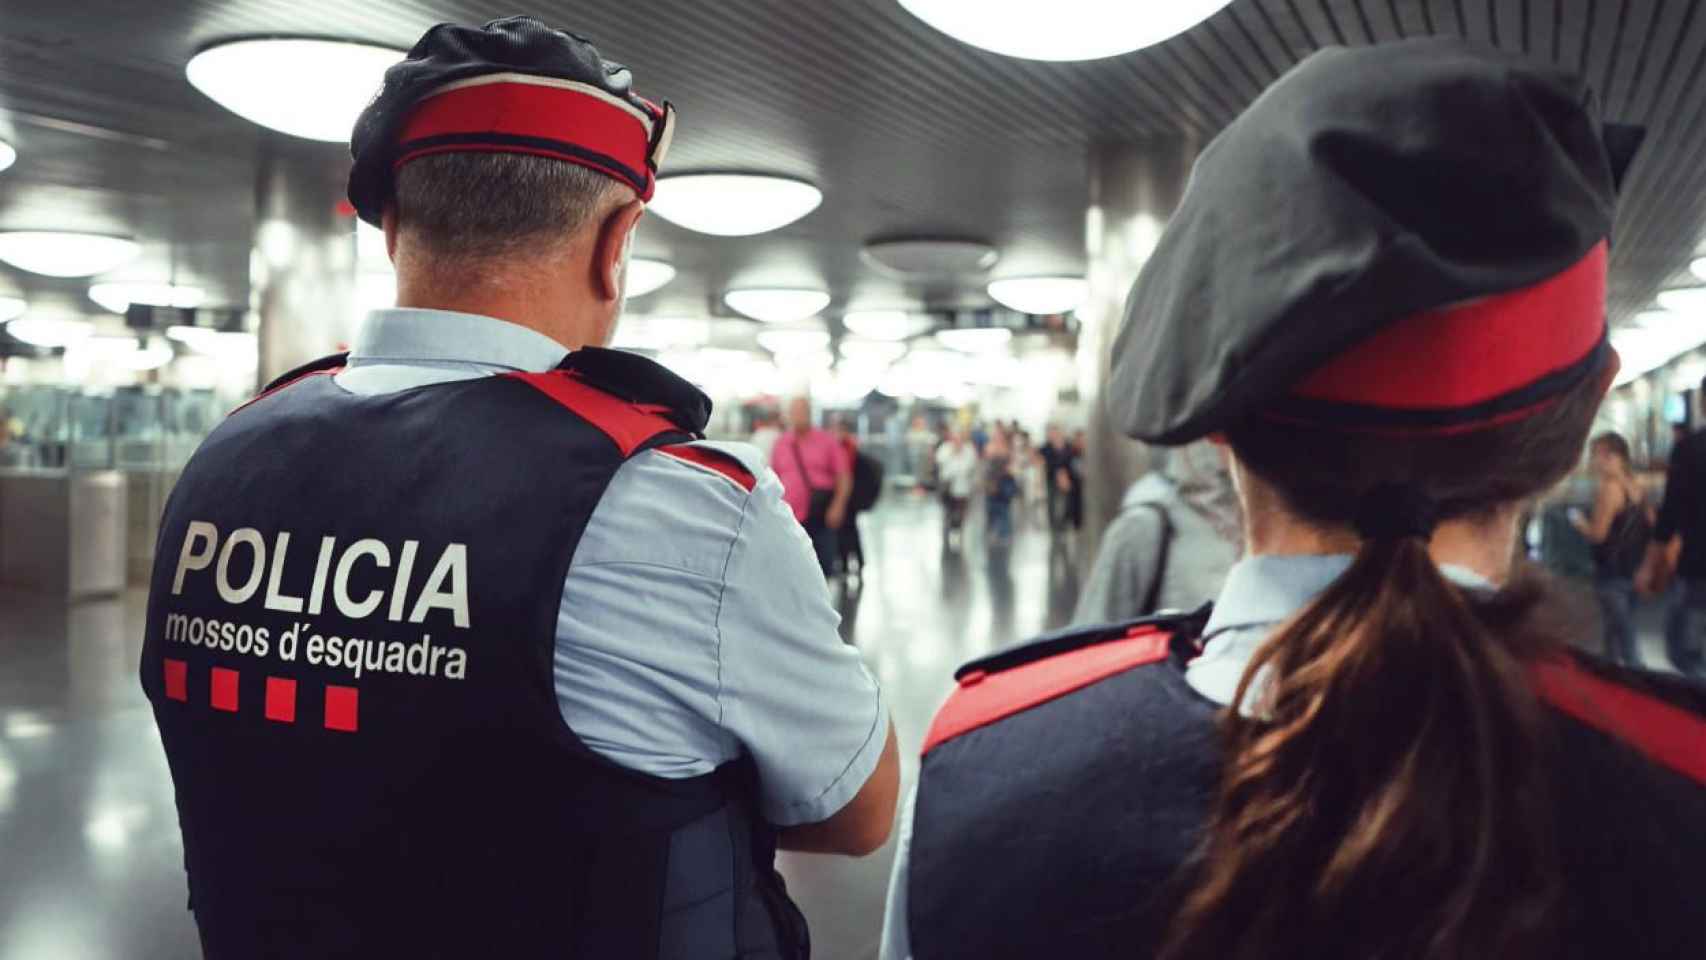 Los Mossos reforzarán la vigilancia por Semana Santa en los lugares donde se concentre mucha gente / @mossos